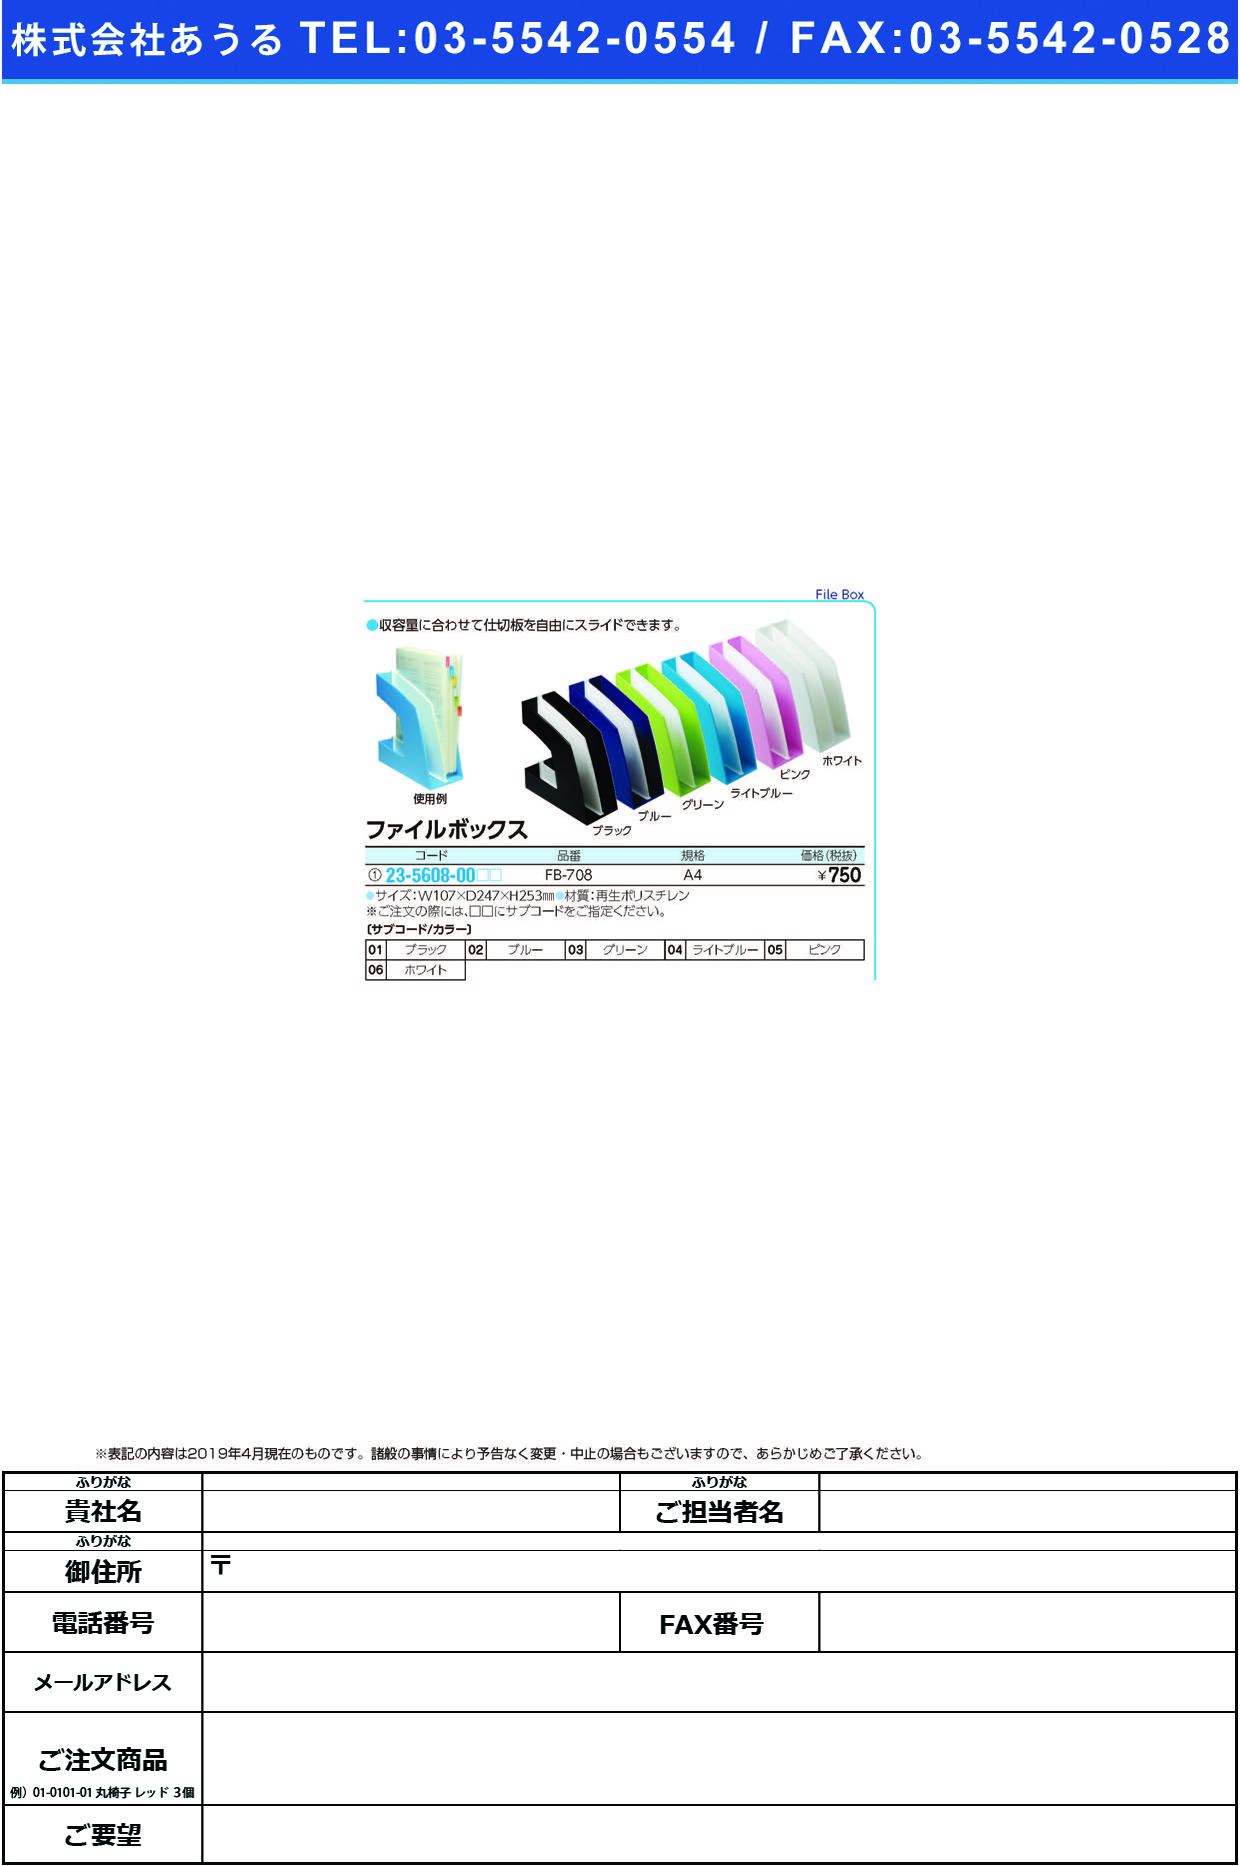 (23-5608-00)ファイルボックス FB-708(A4) ﾌｧｲﾙﾎﾞｯｸｽ ブラック【1個単位】【2019年カタログ商品】